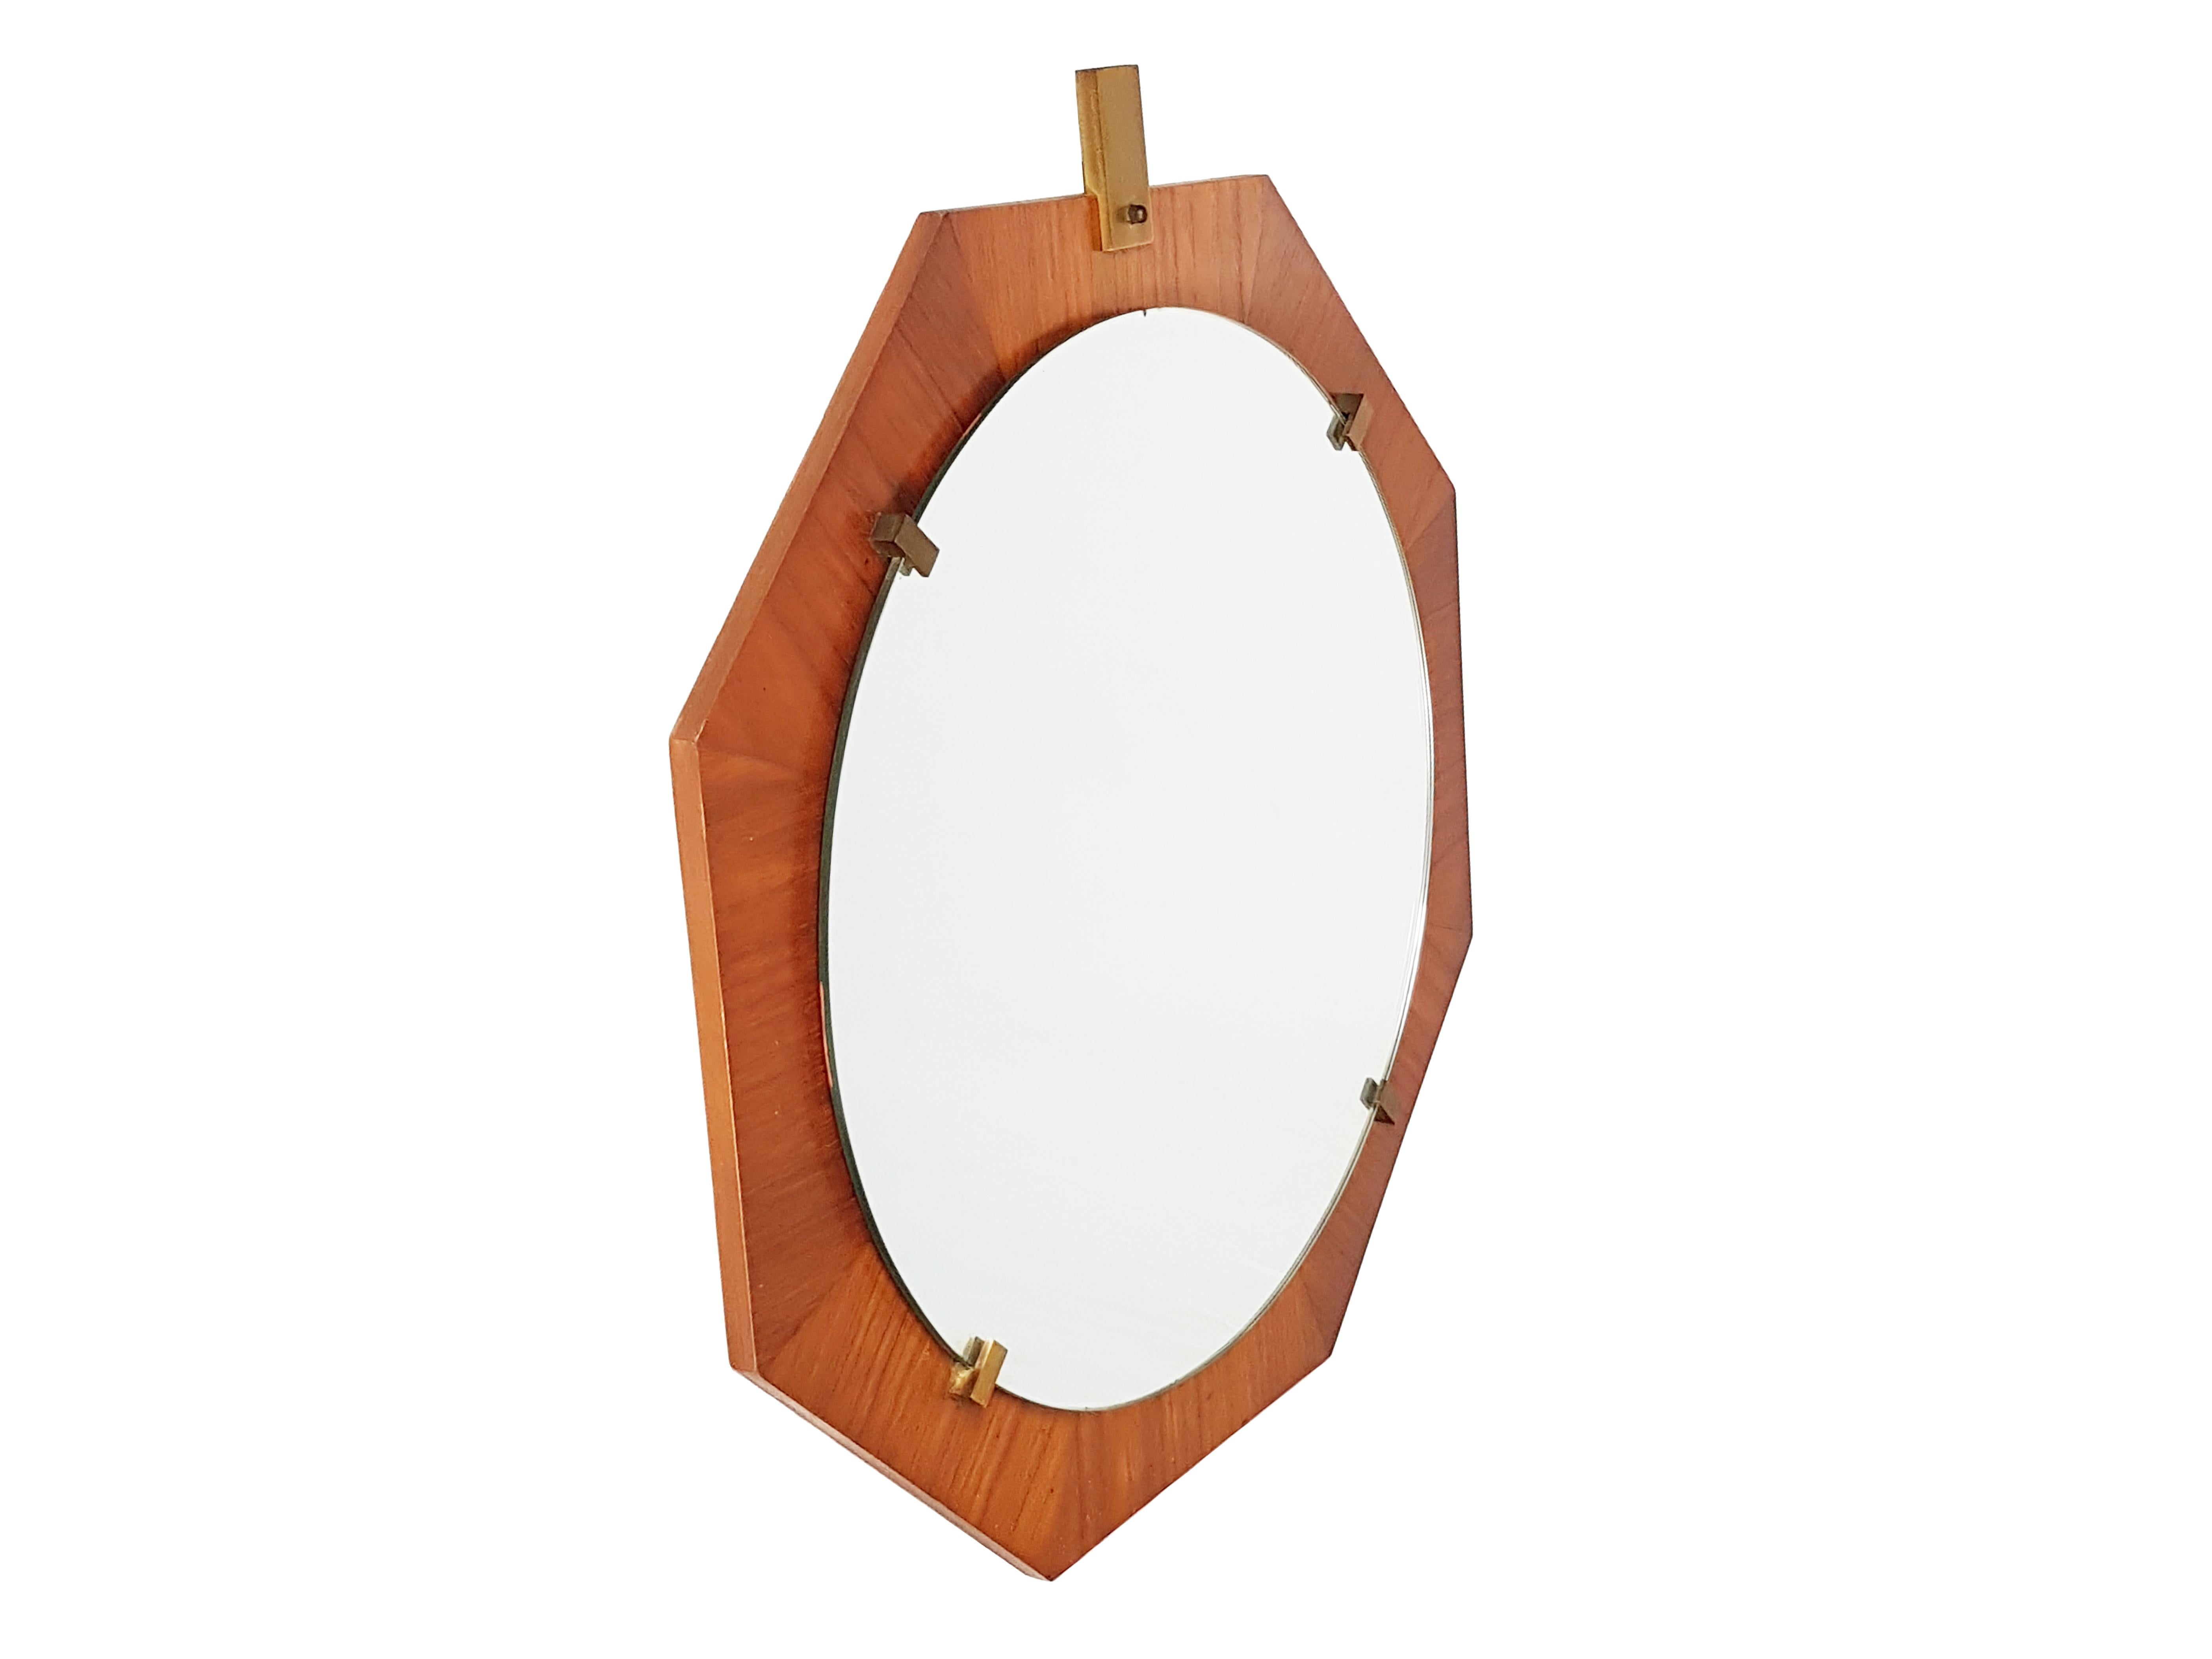 Ce miroir a été produit en Italie dans les années 1960. De forme octogonale, il est composé d'une structure en teck, de supports en laiton et d'un verre rond en miroir. Il reste en très bon état vintage.